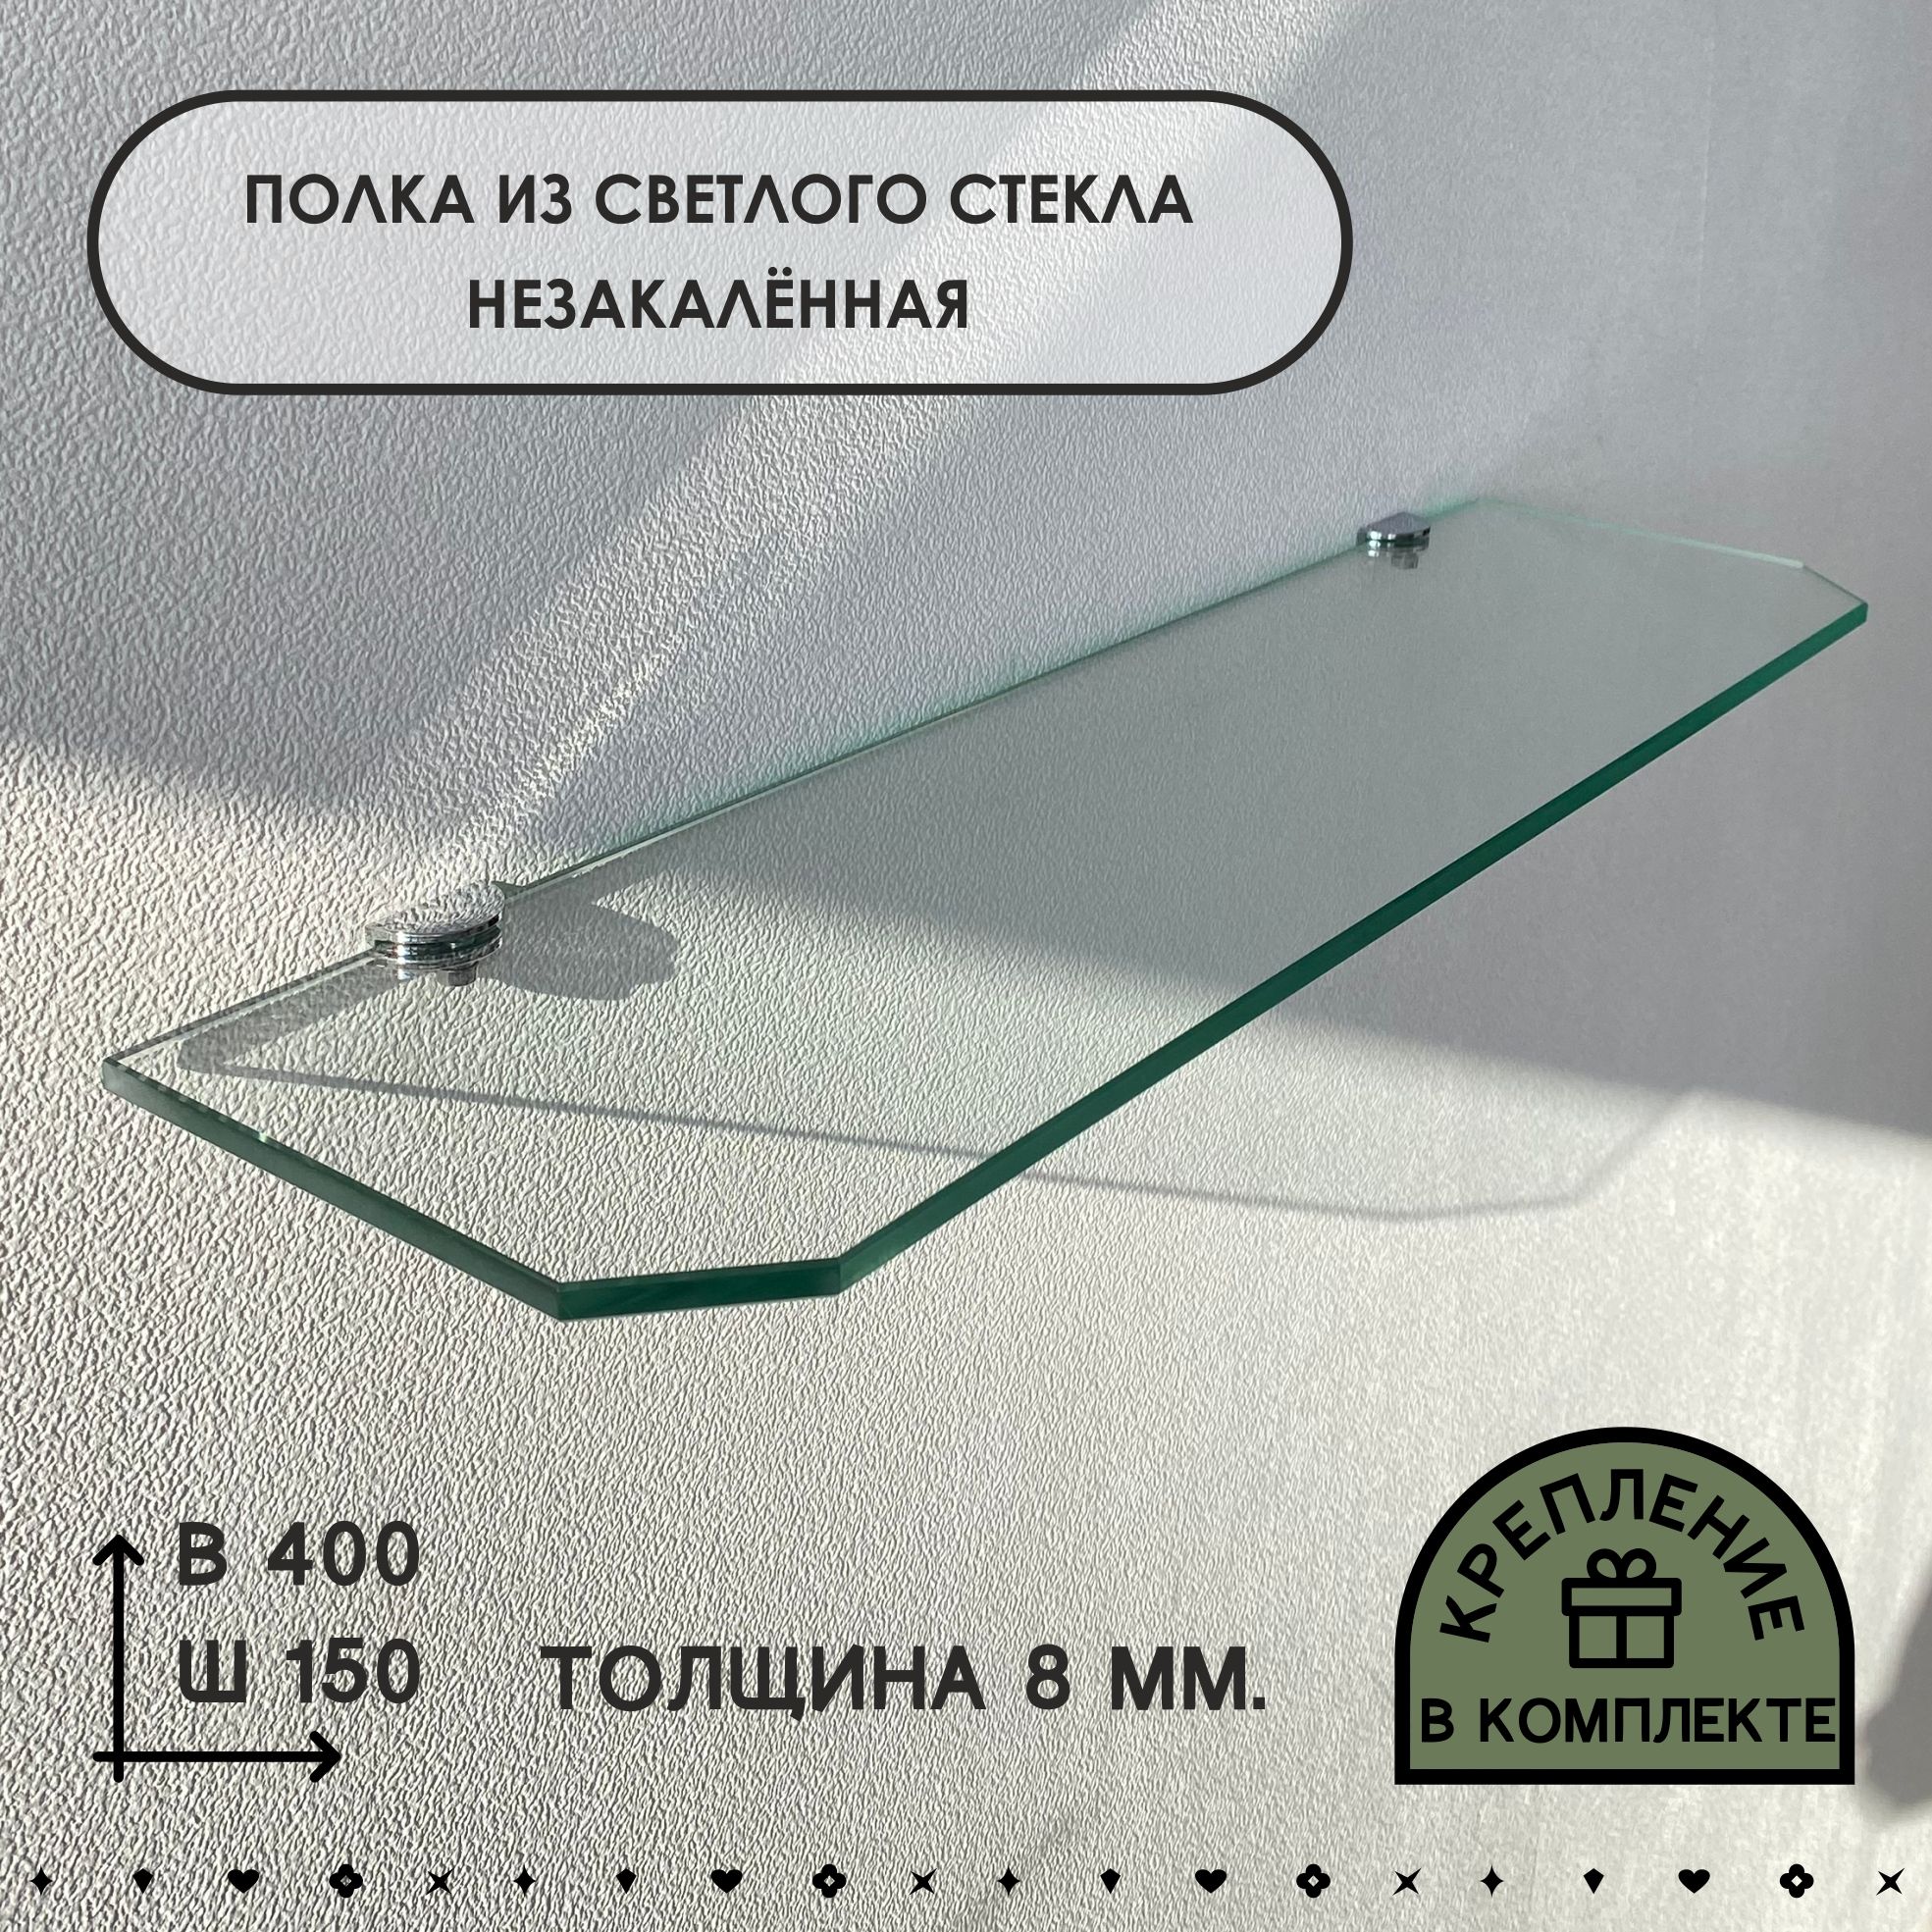 Полка СЕДАК из светлого стекла, толщиной 8 мм 150х400 мм